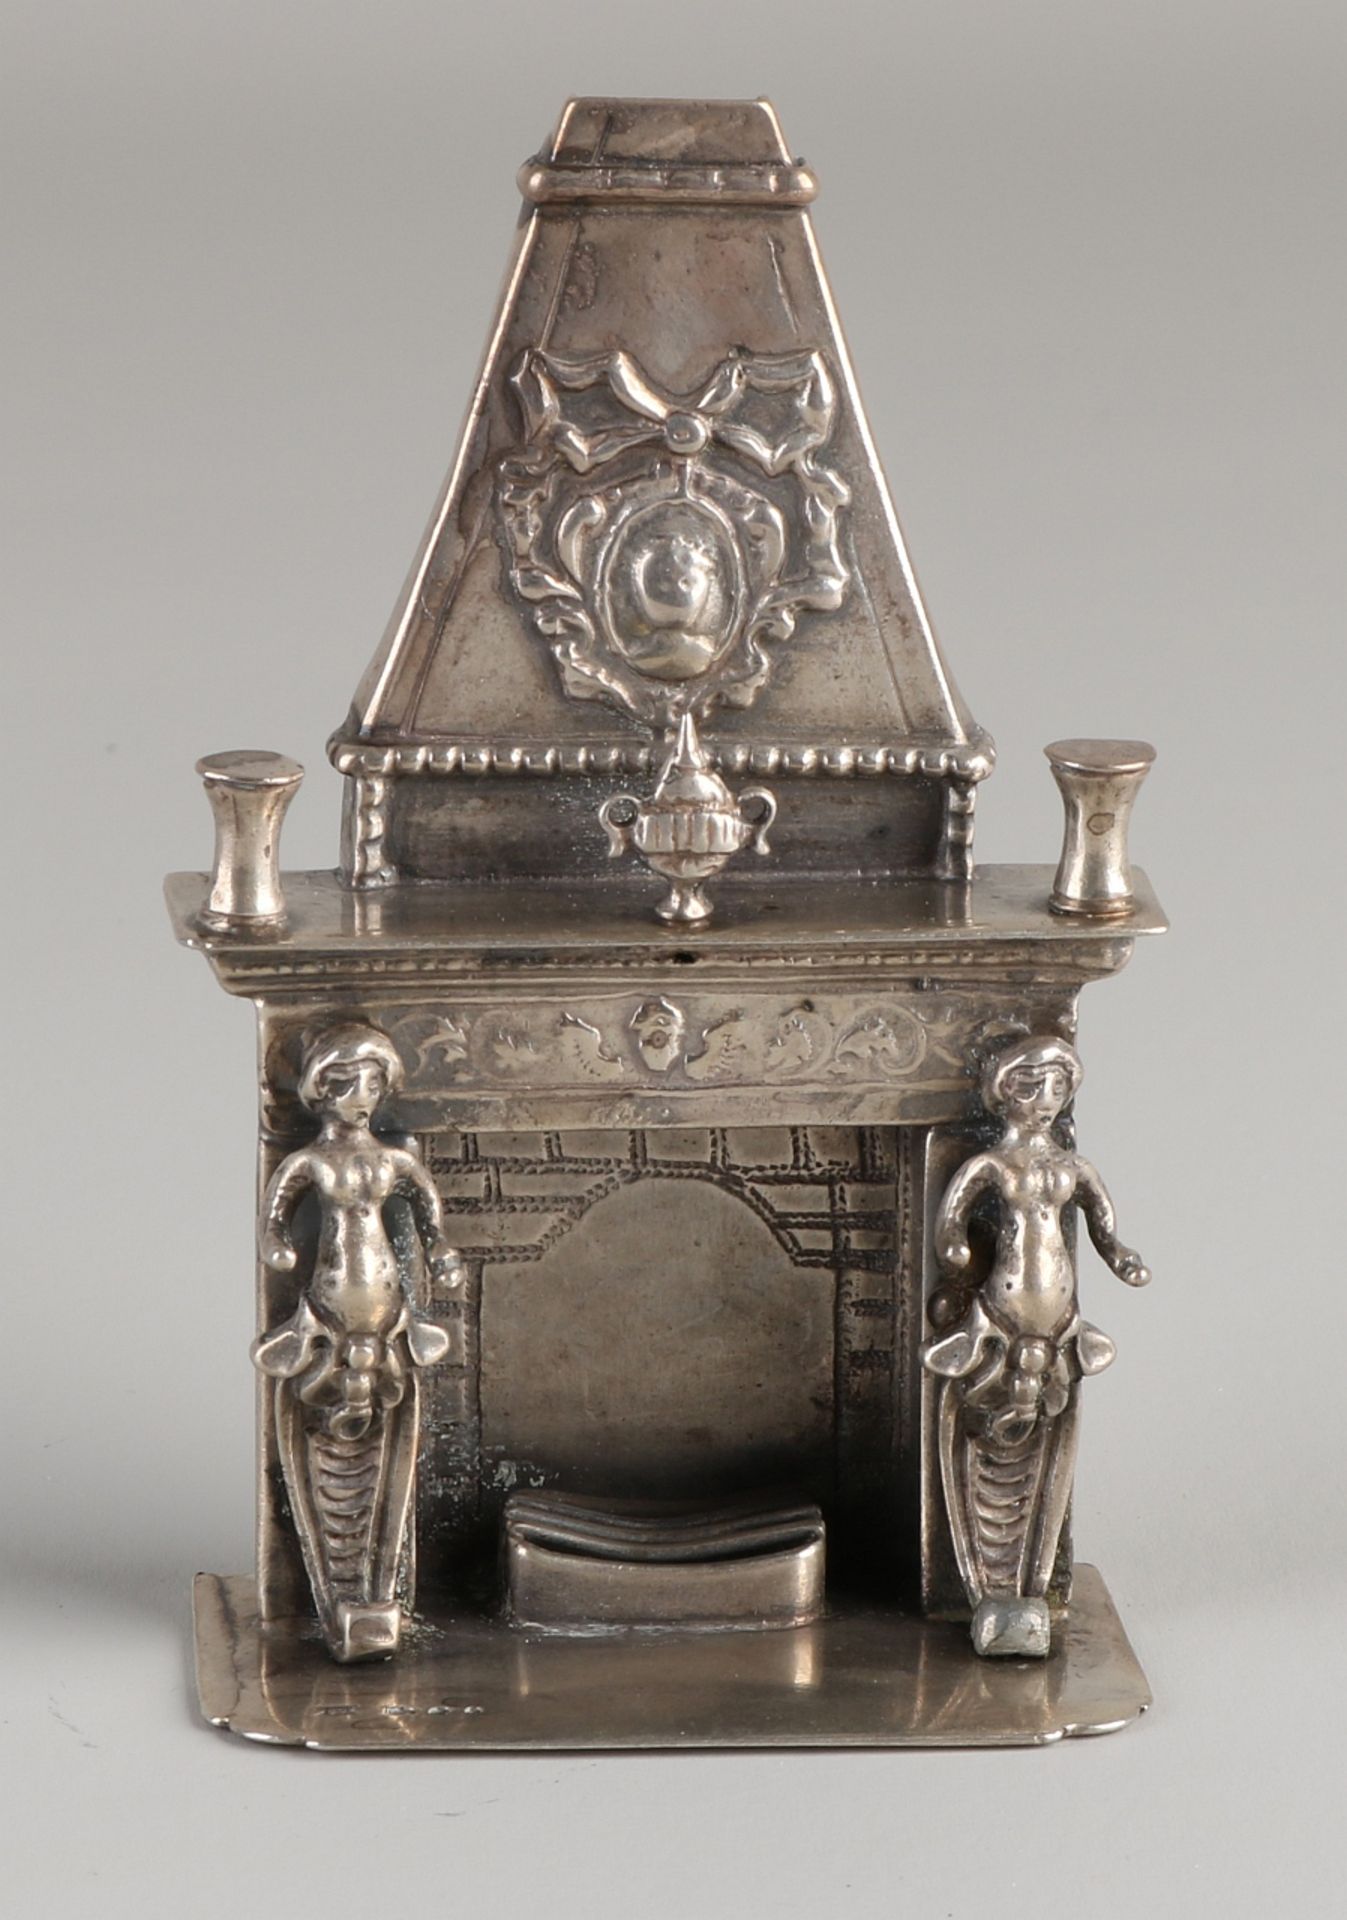 Silberner Miniaturkamin, 835/000, verziert mit Figuren, Vasen und Medaillon. Auf einer rechteckige